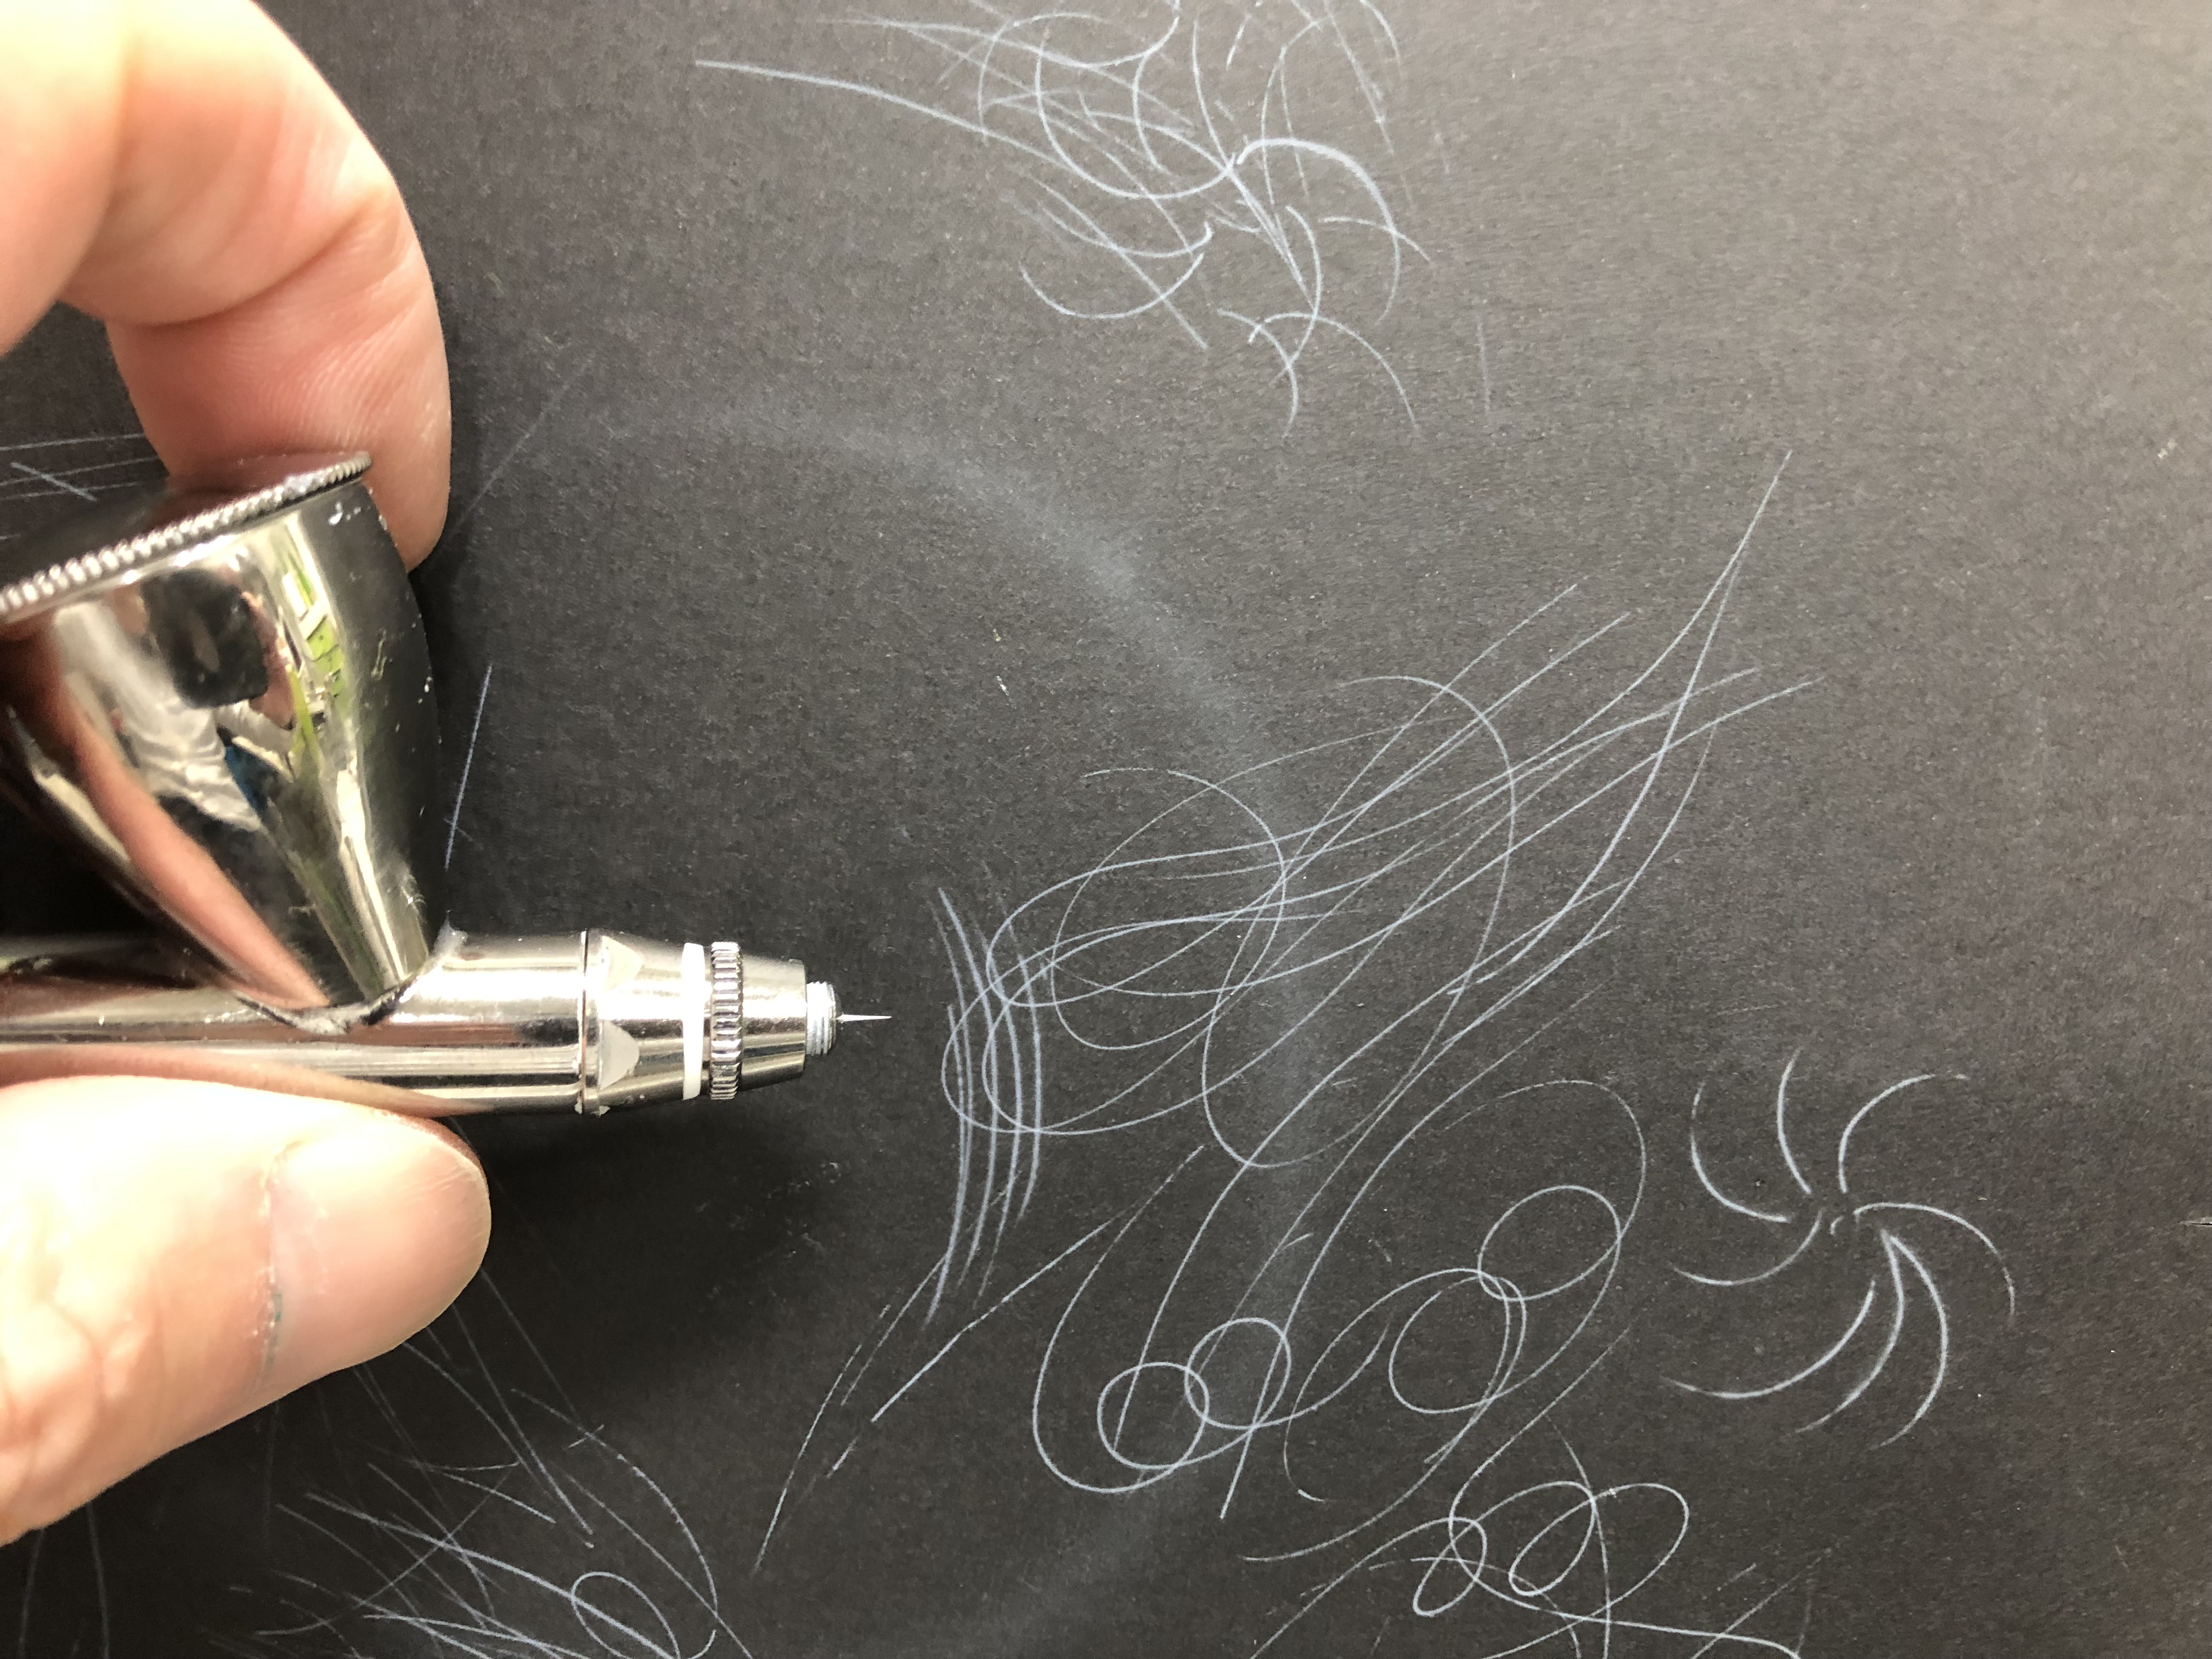 エアブラシで描く究極に細い線の描き方 エアブラシアート動物画編 エアブラシオンラインスクール